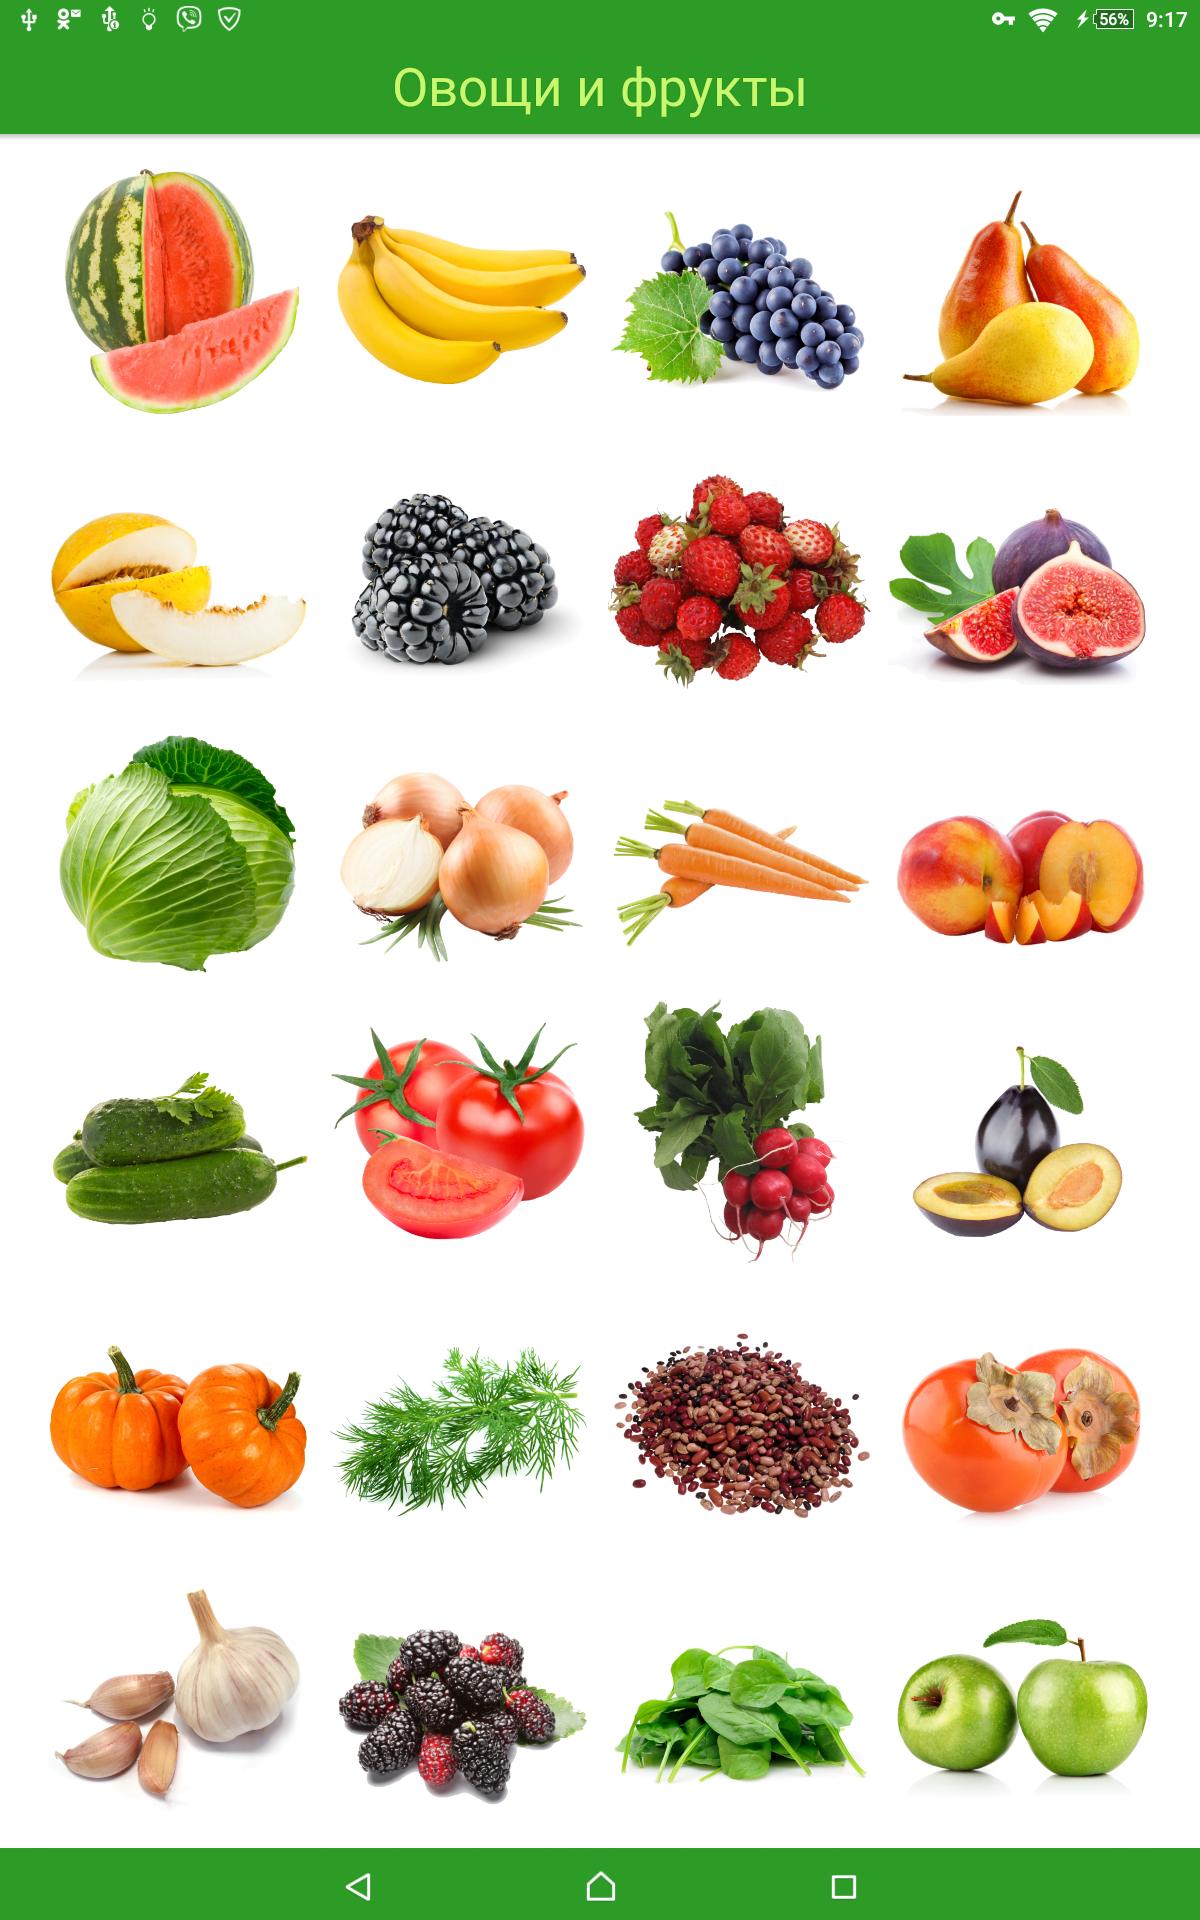 Фруктовая азбука. Овощи и фрукты. Азбука фрукты и овощи. Фрукты и овощи по алфавиту. Фрукты и овощи и ягоды по алфавиту.